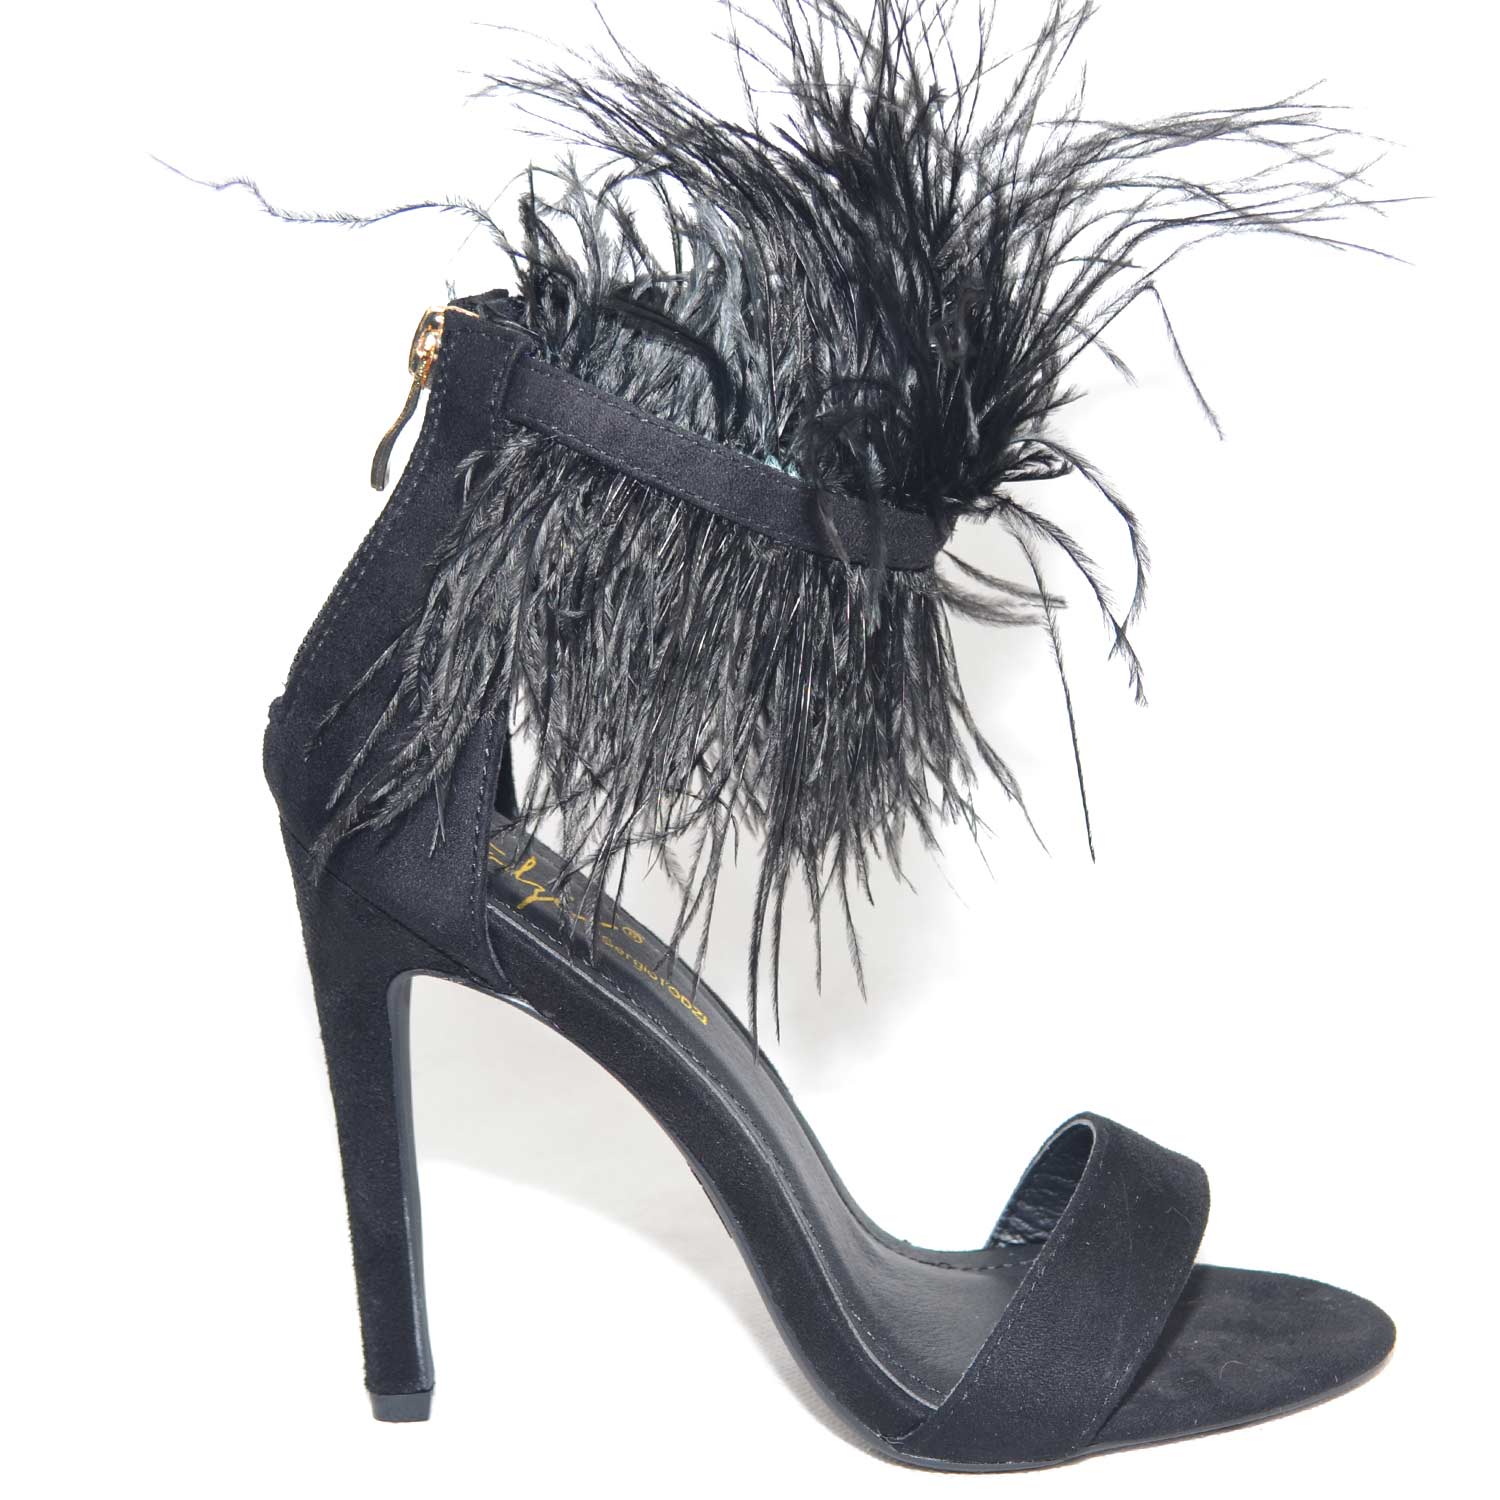 Sandalo donna con tacco alto a spiillo in camoscio nero e cinturino con  piume peluche donna sandali tacco sergio todzi | MaluShoes